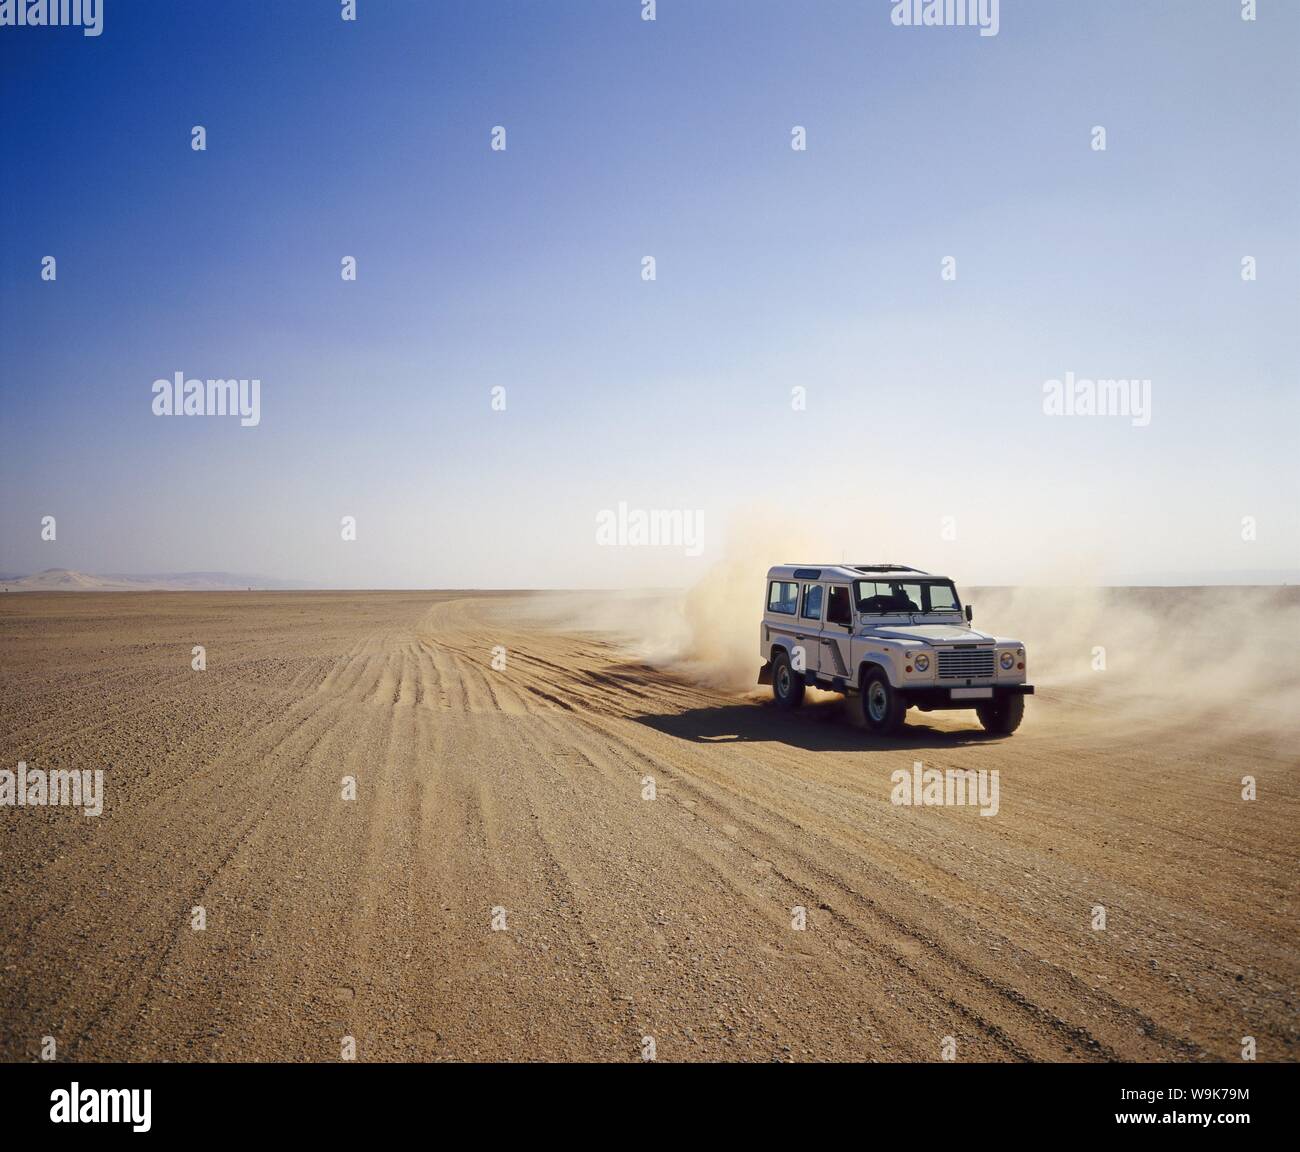 Four-wheel drive Landrover, off-roading in the desert, Algeria, Africa Stock Photo